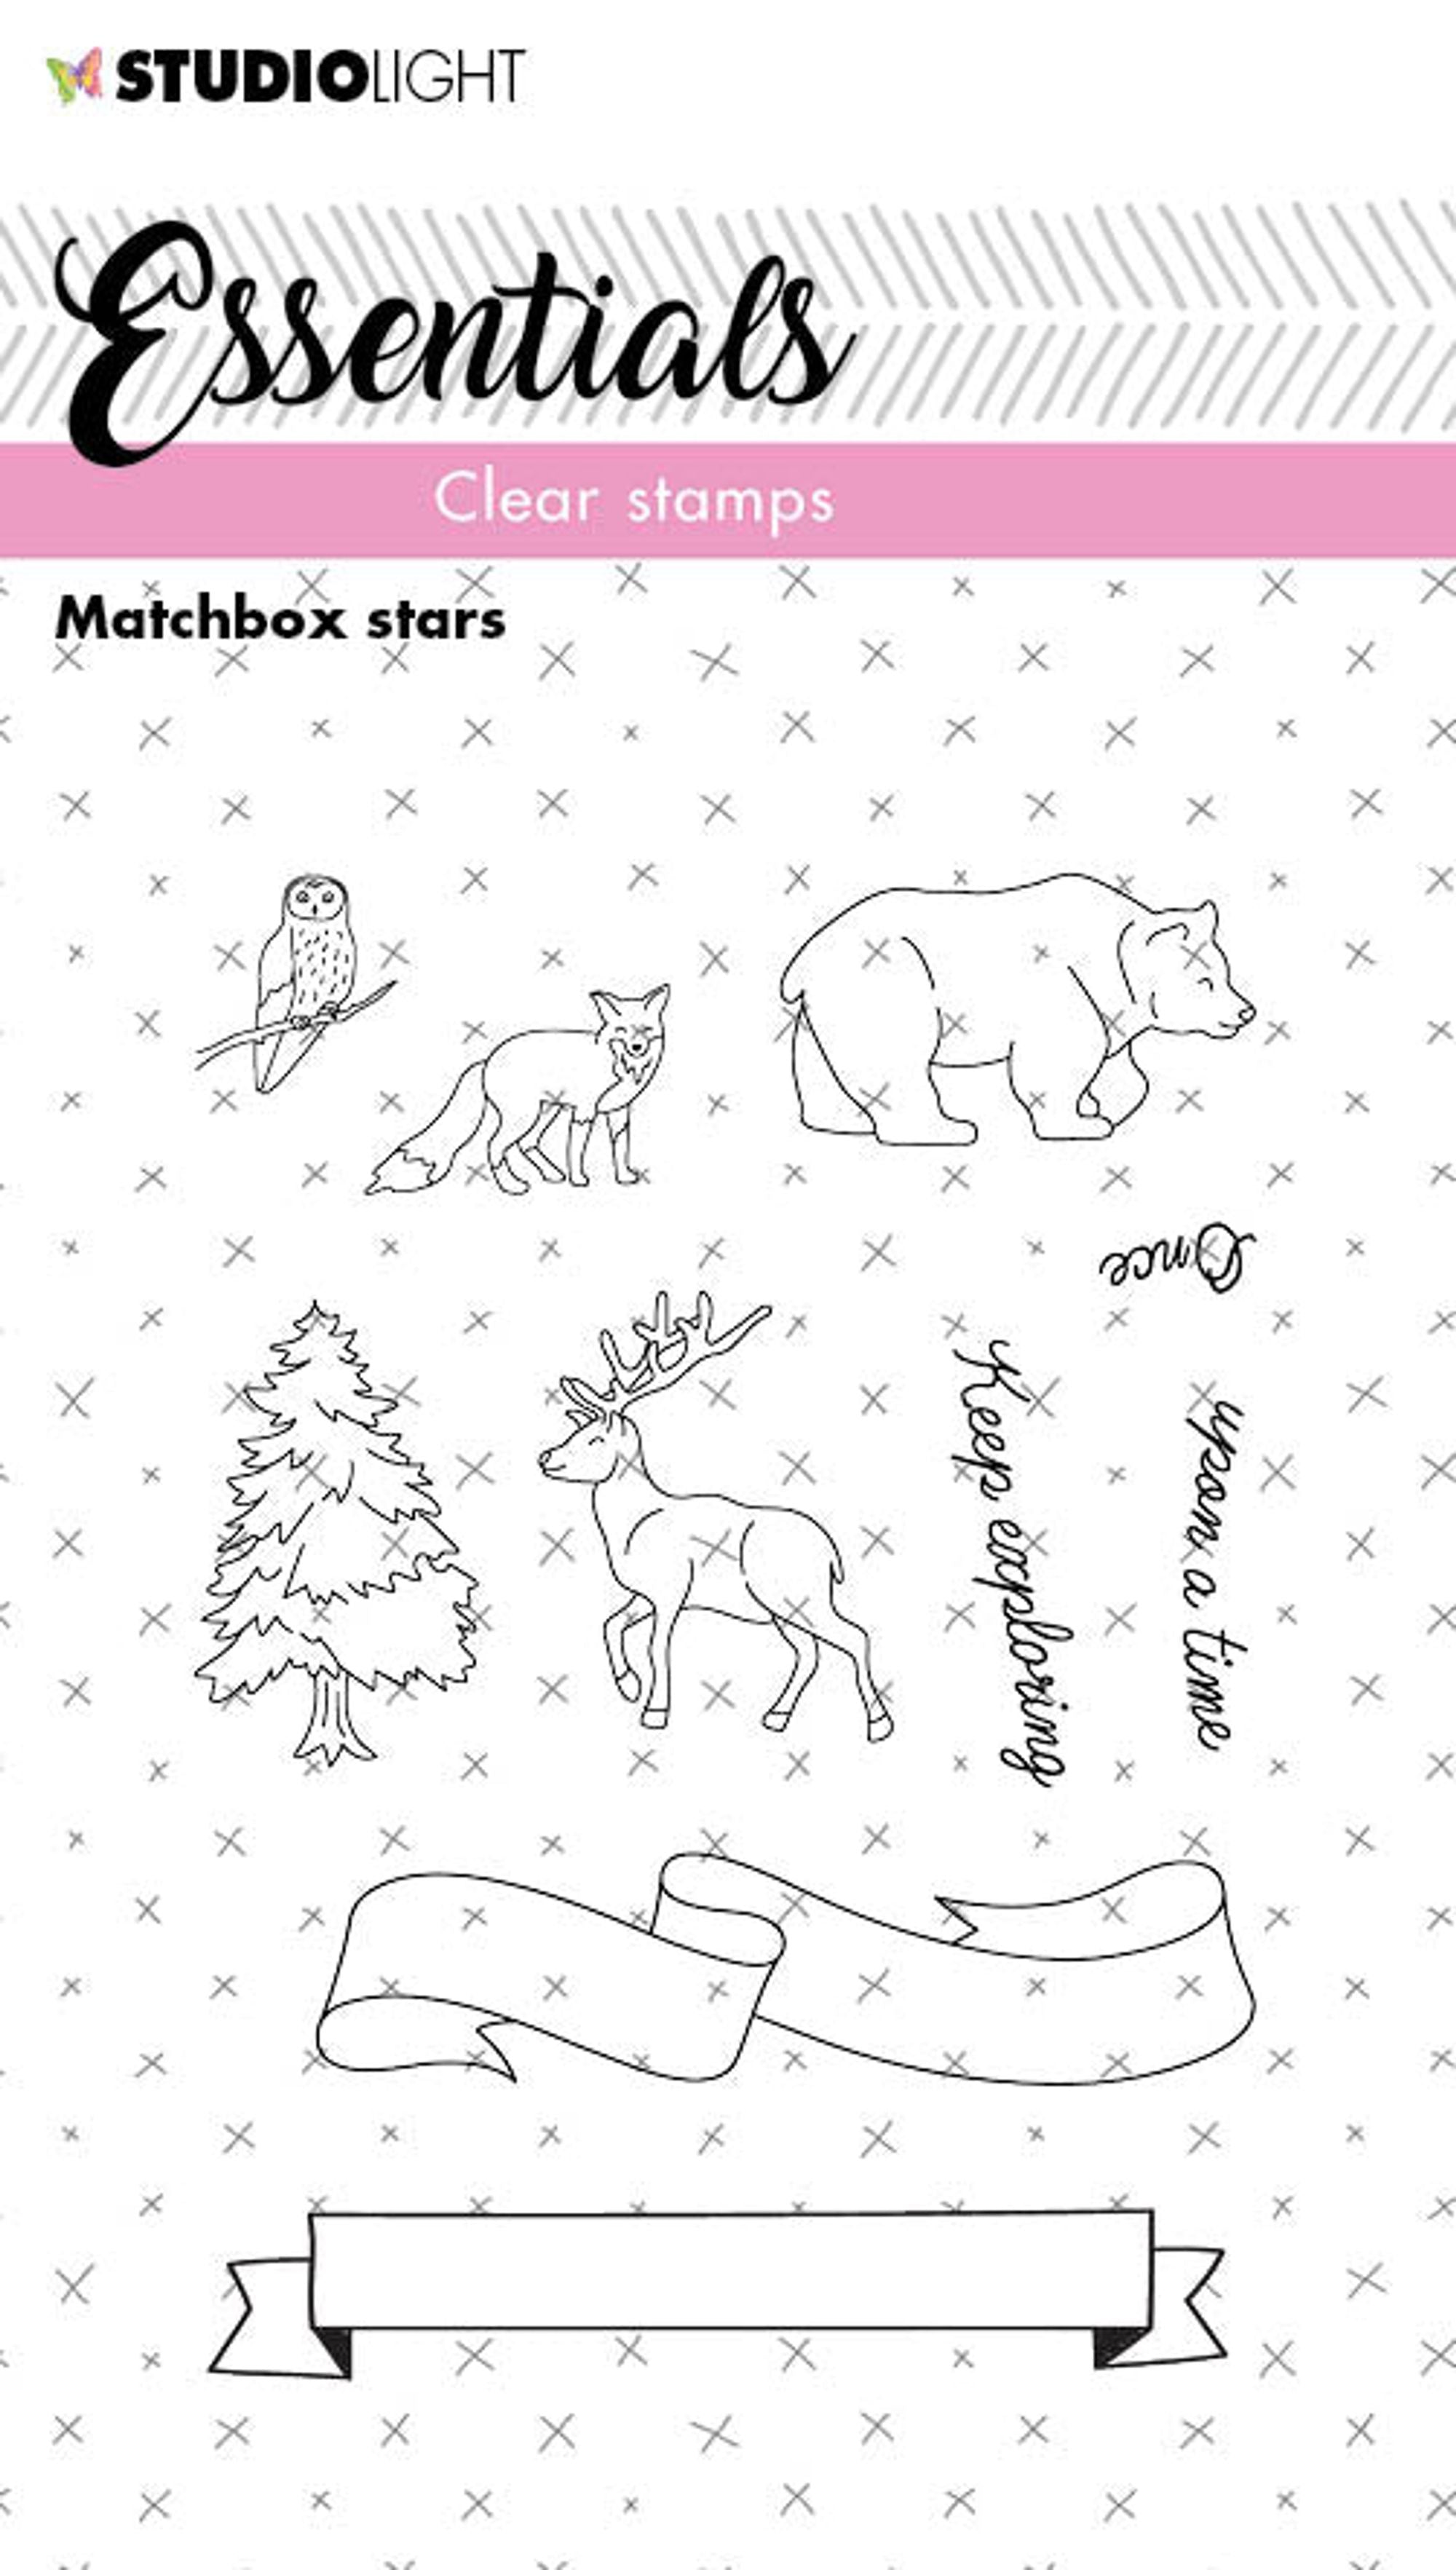 SL Clear Stamp Matchbox Stars Essentials 74x100x4mm 1 PC nr.143